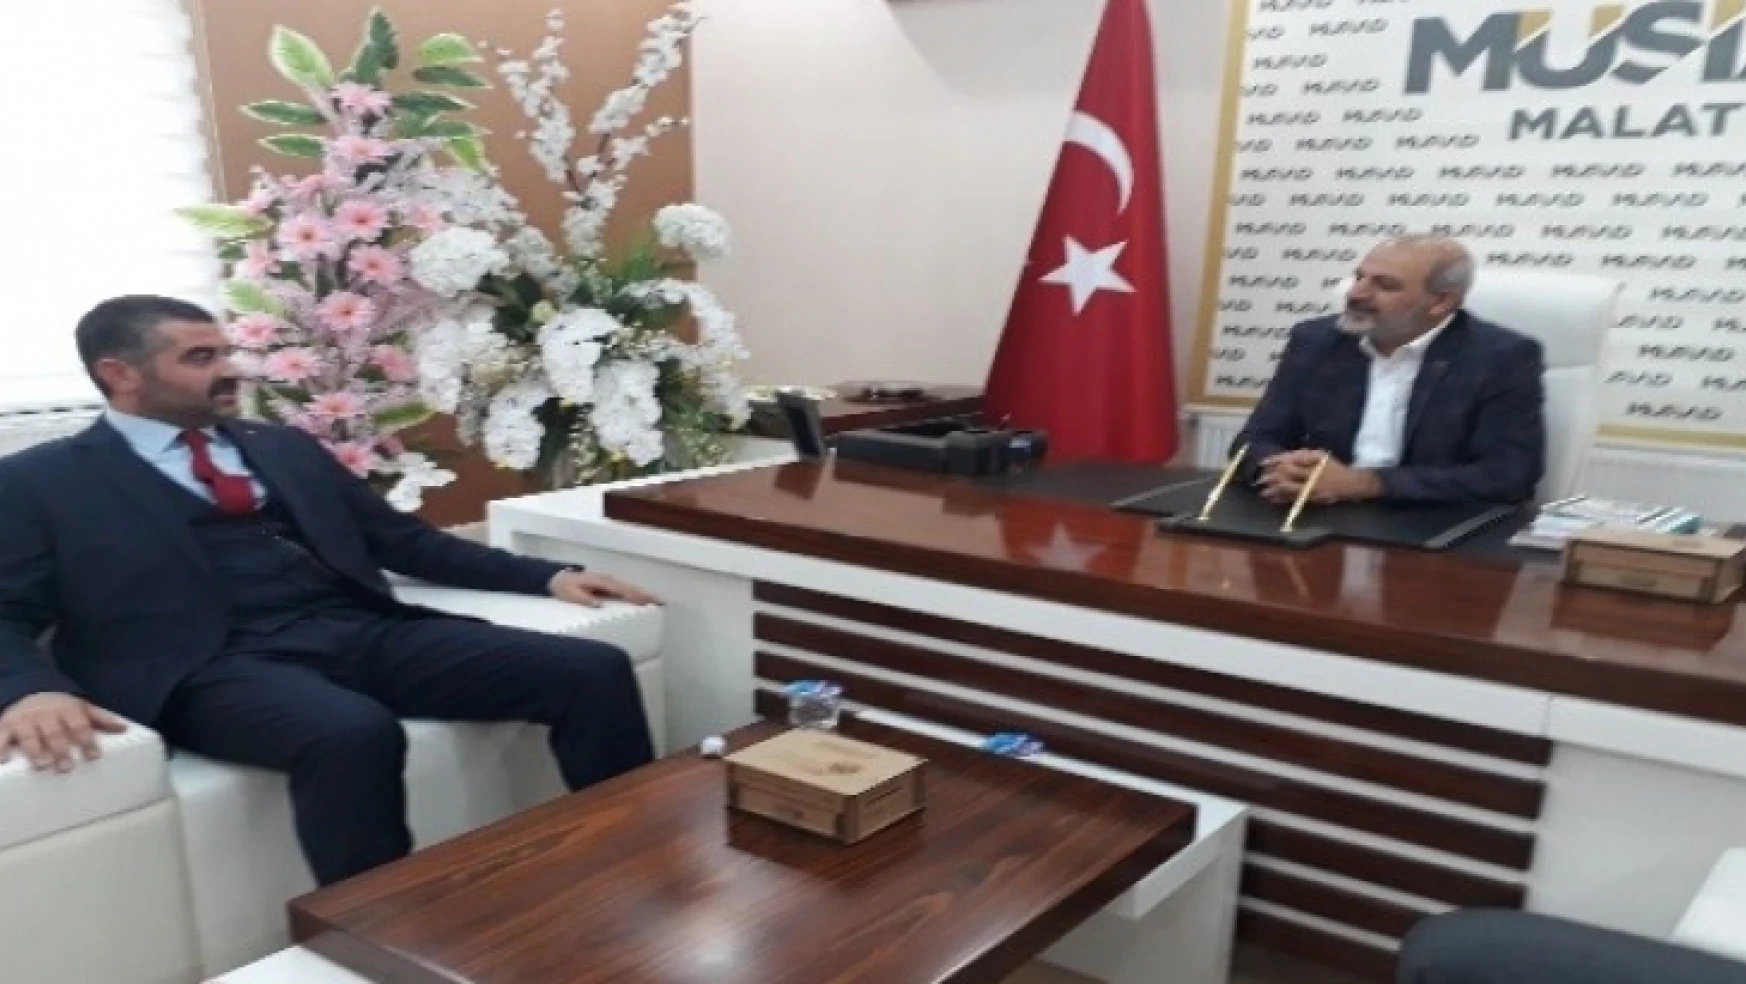 MHP İl Başkanı Avşar'dan MÜSİAD'a ziyaret